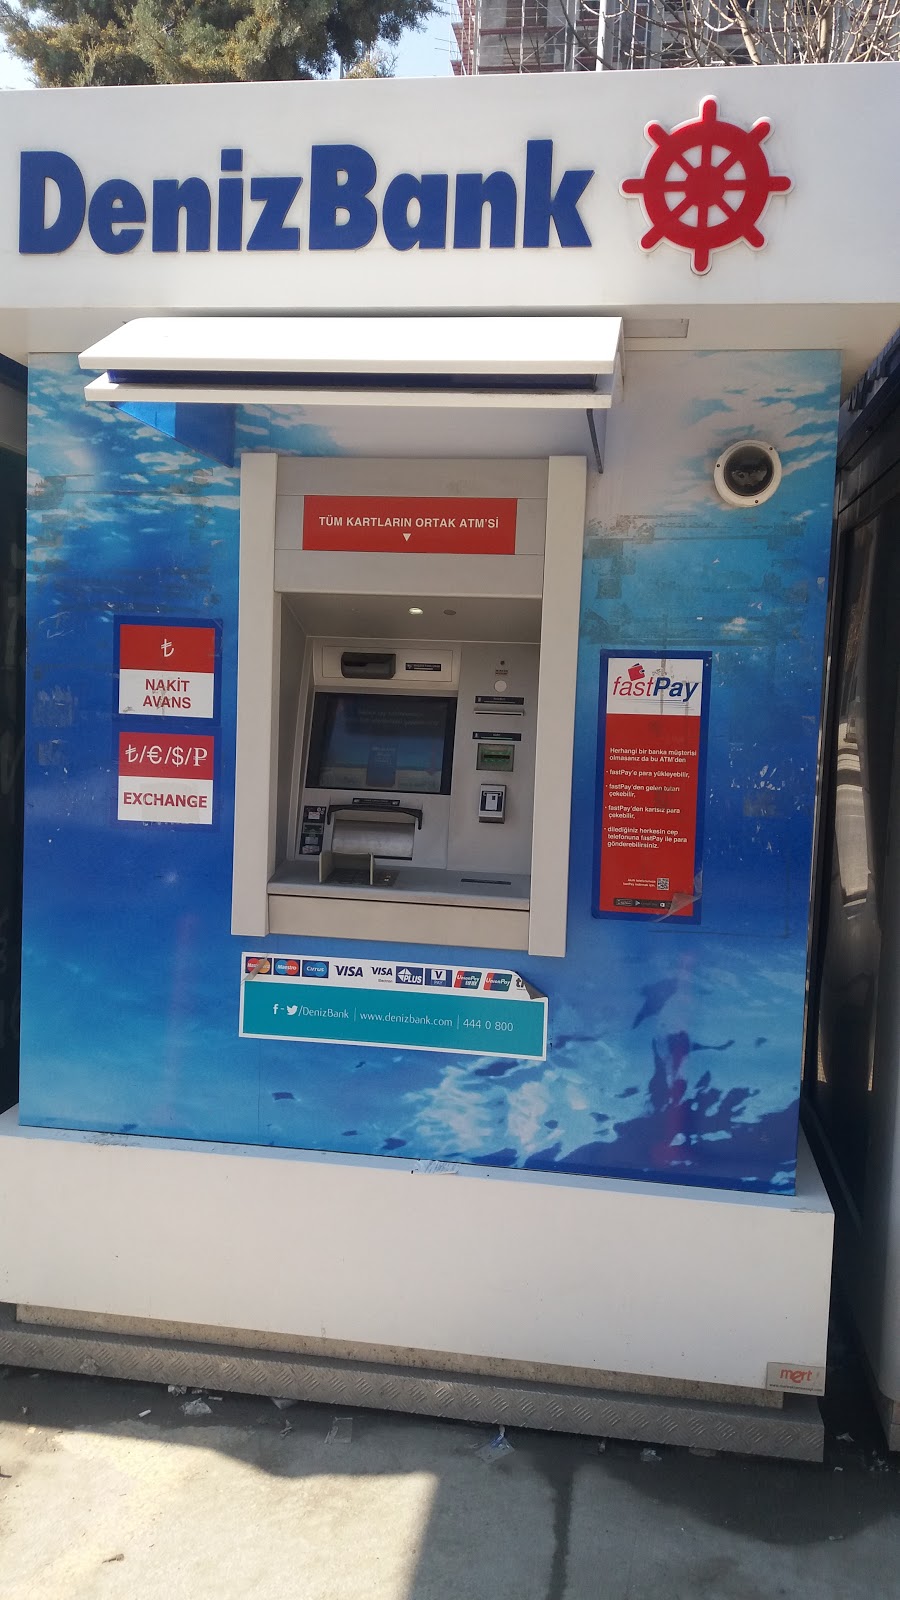 DenizBank ATM